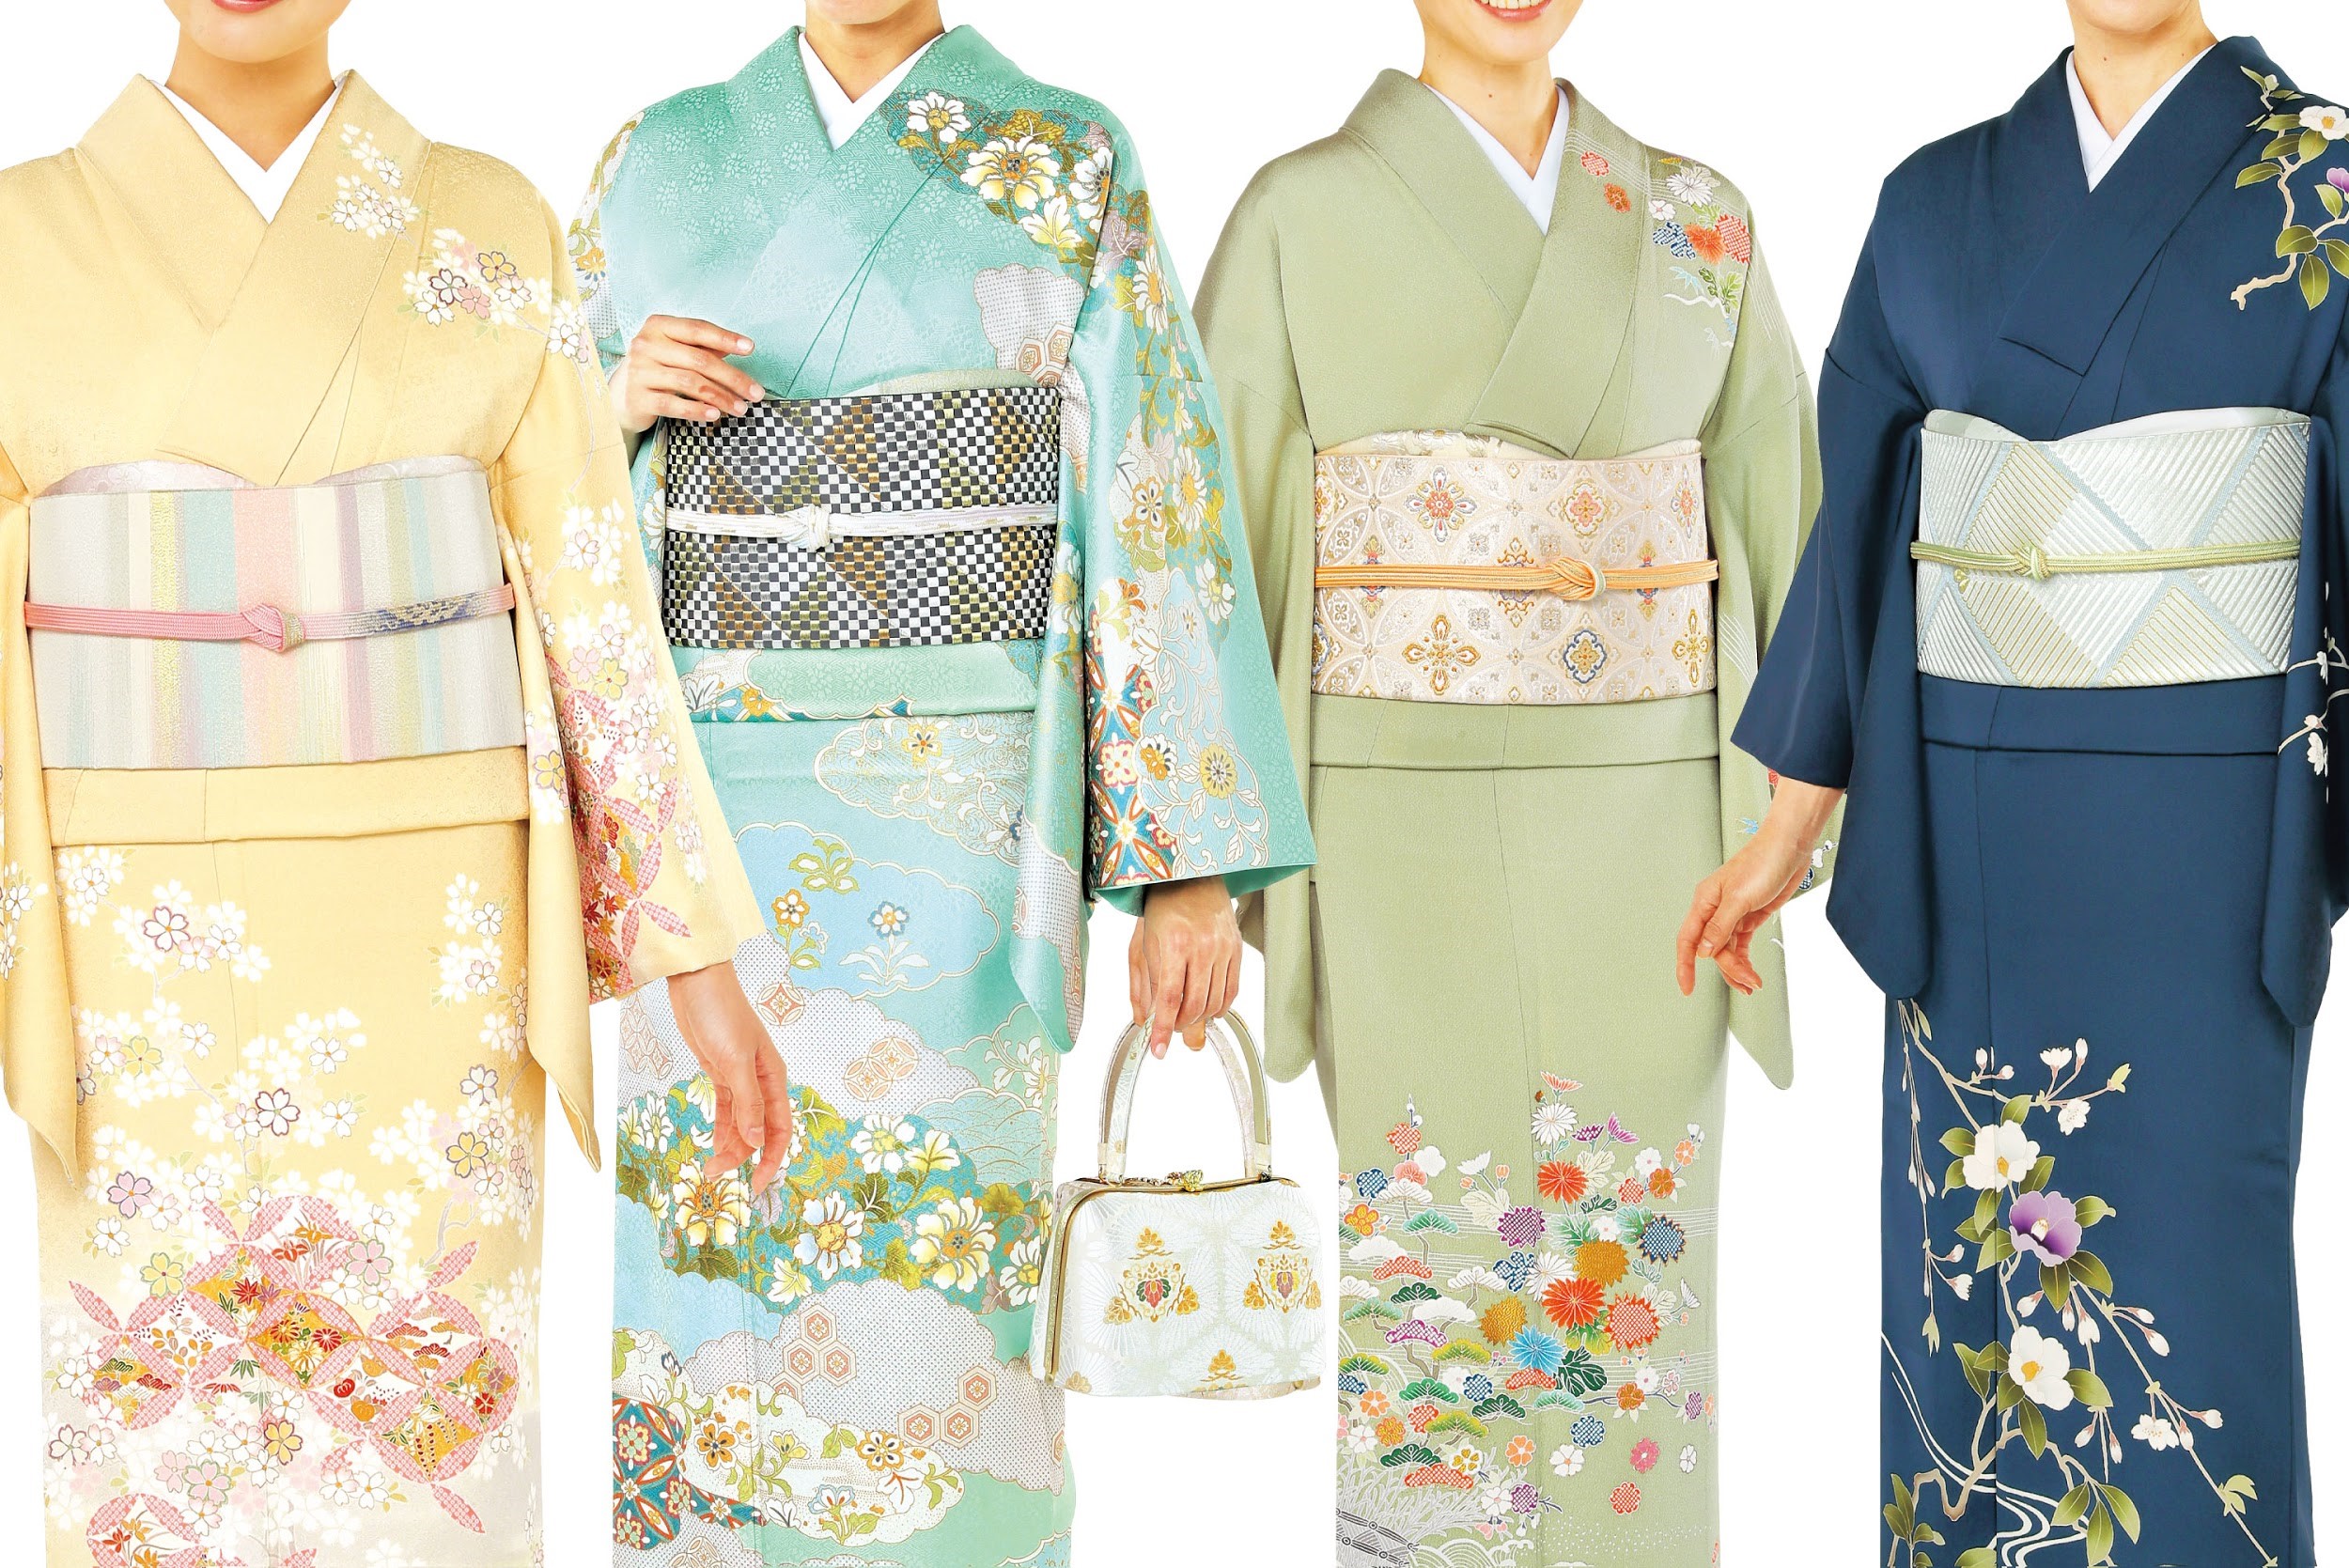 立場別 結婚式のお呼ばれに着る着物の選び方 友人 職場関係 親戚編 着物 和 京都に関する情報ならきものと